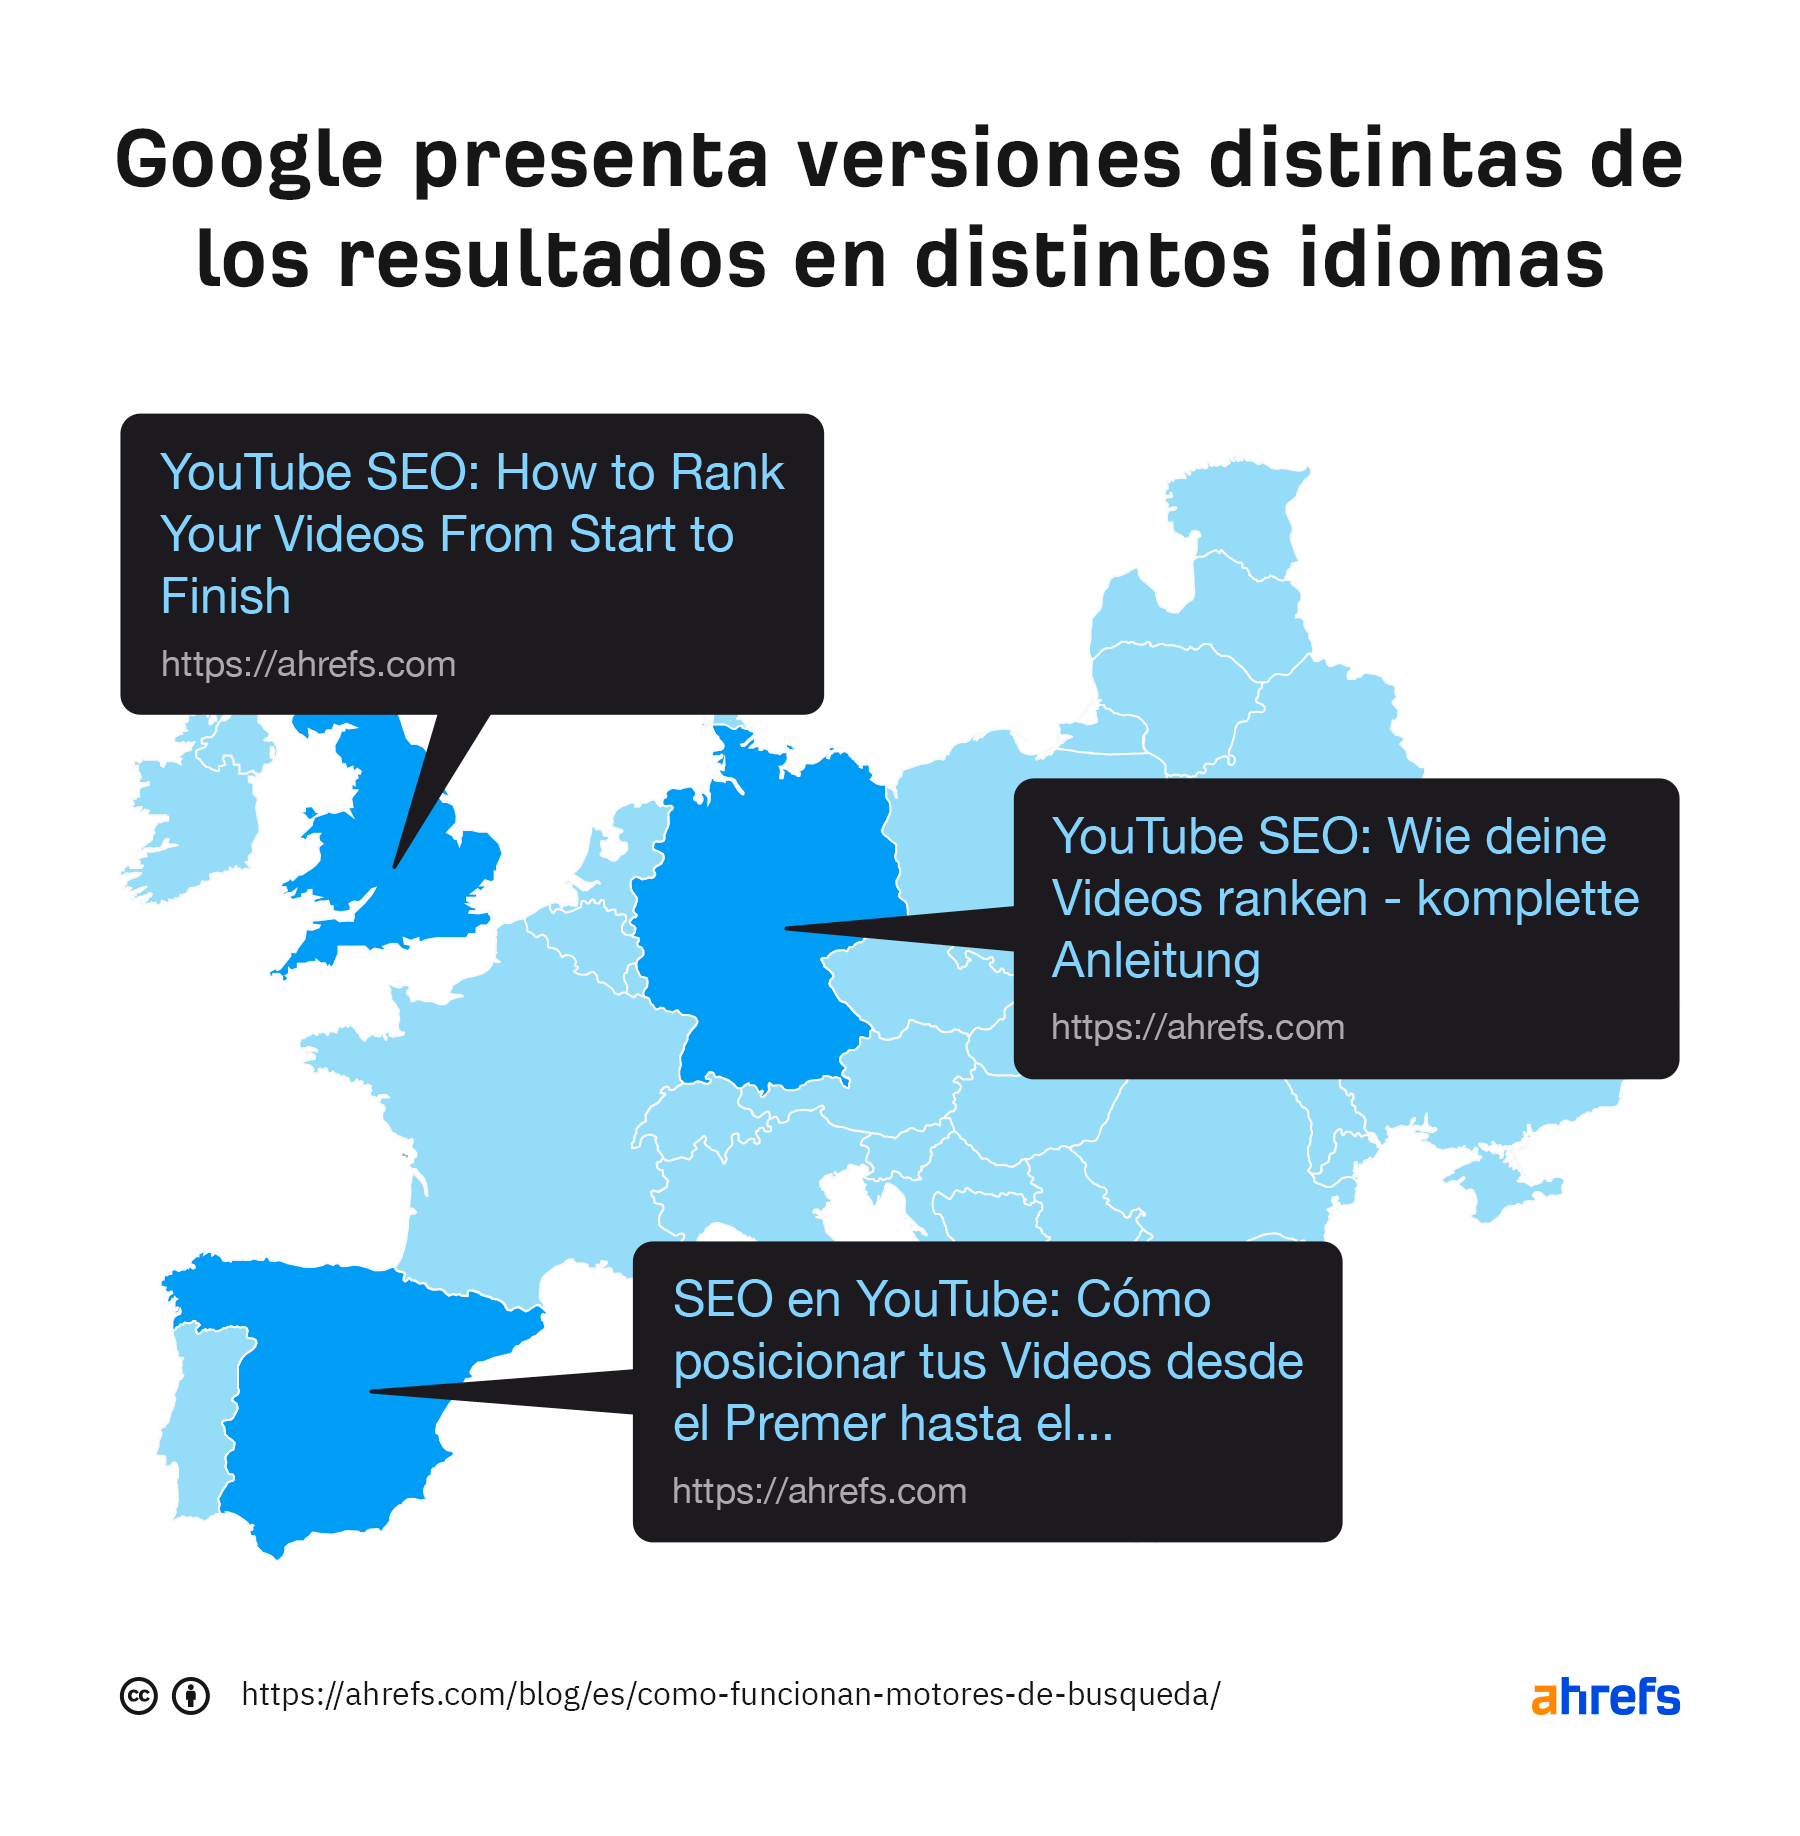 Google presenta diferentes versiones de resultados en distintos idiomas